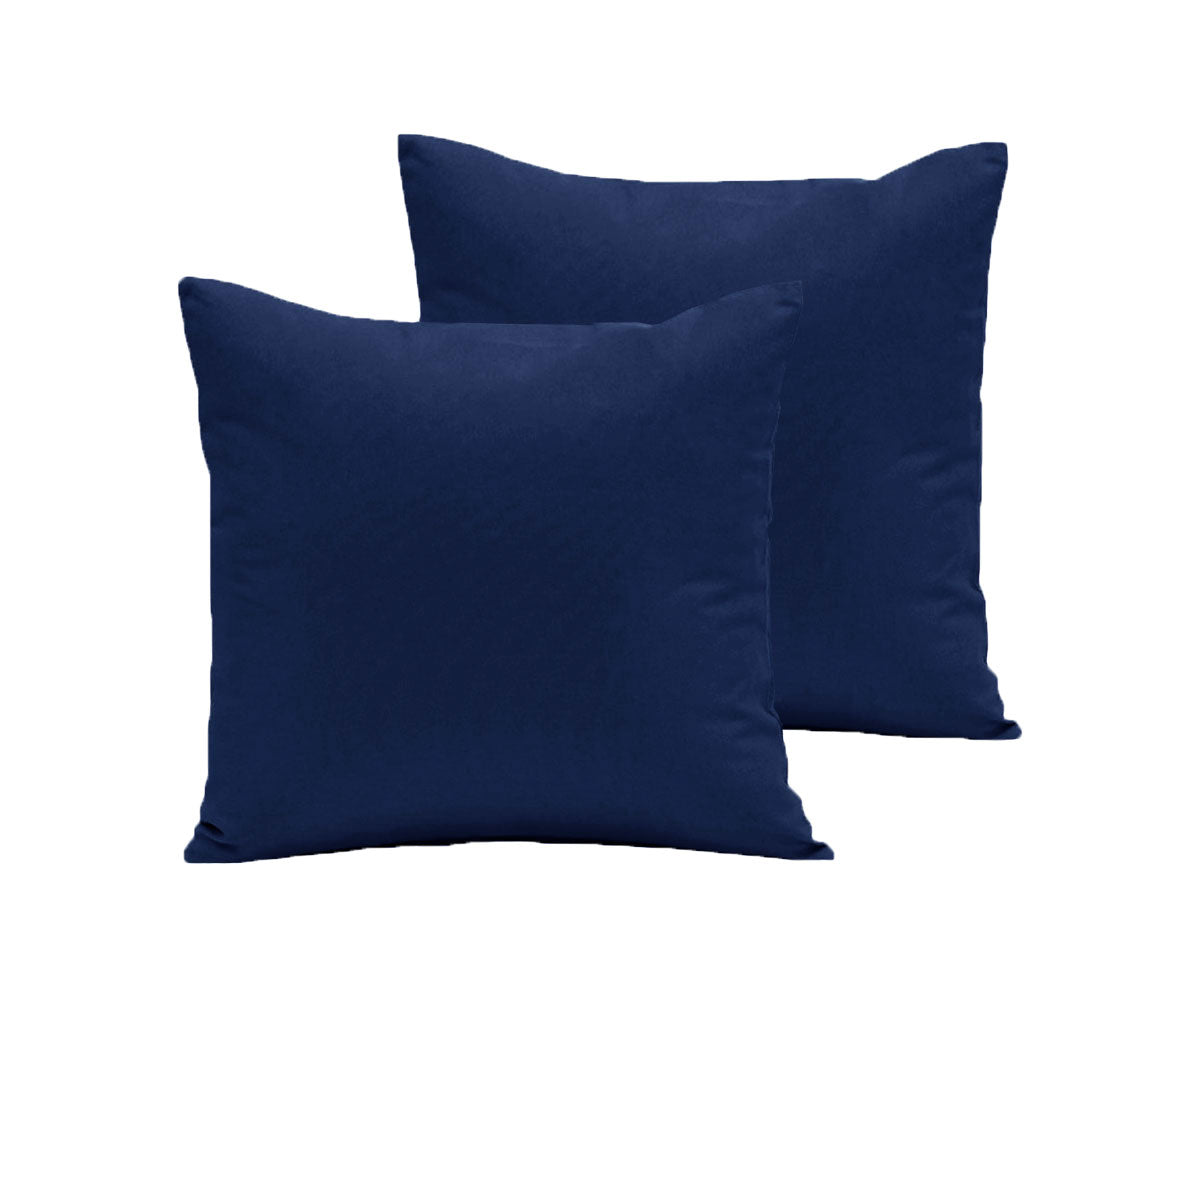 Pair of  280TC Polyester Cotton European Pillowcases Navy